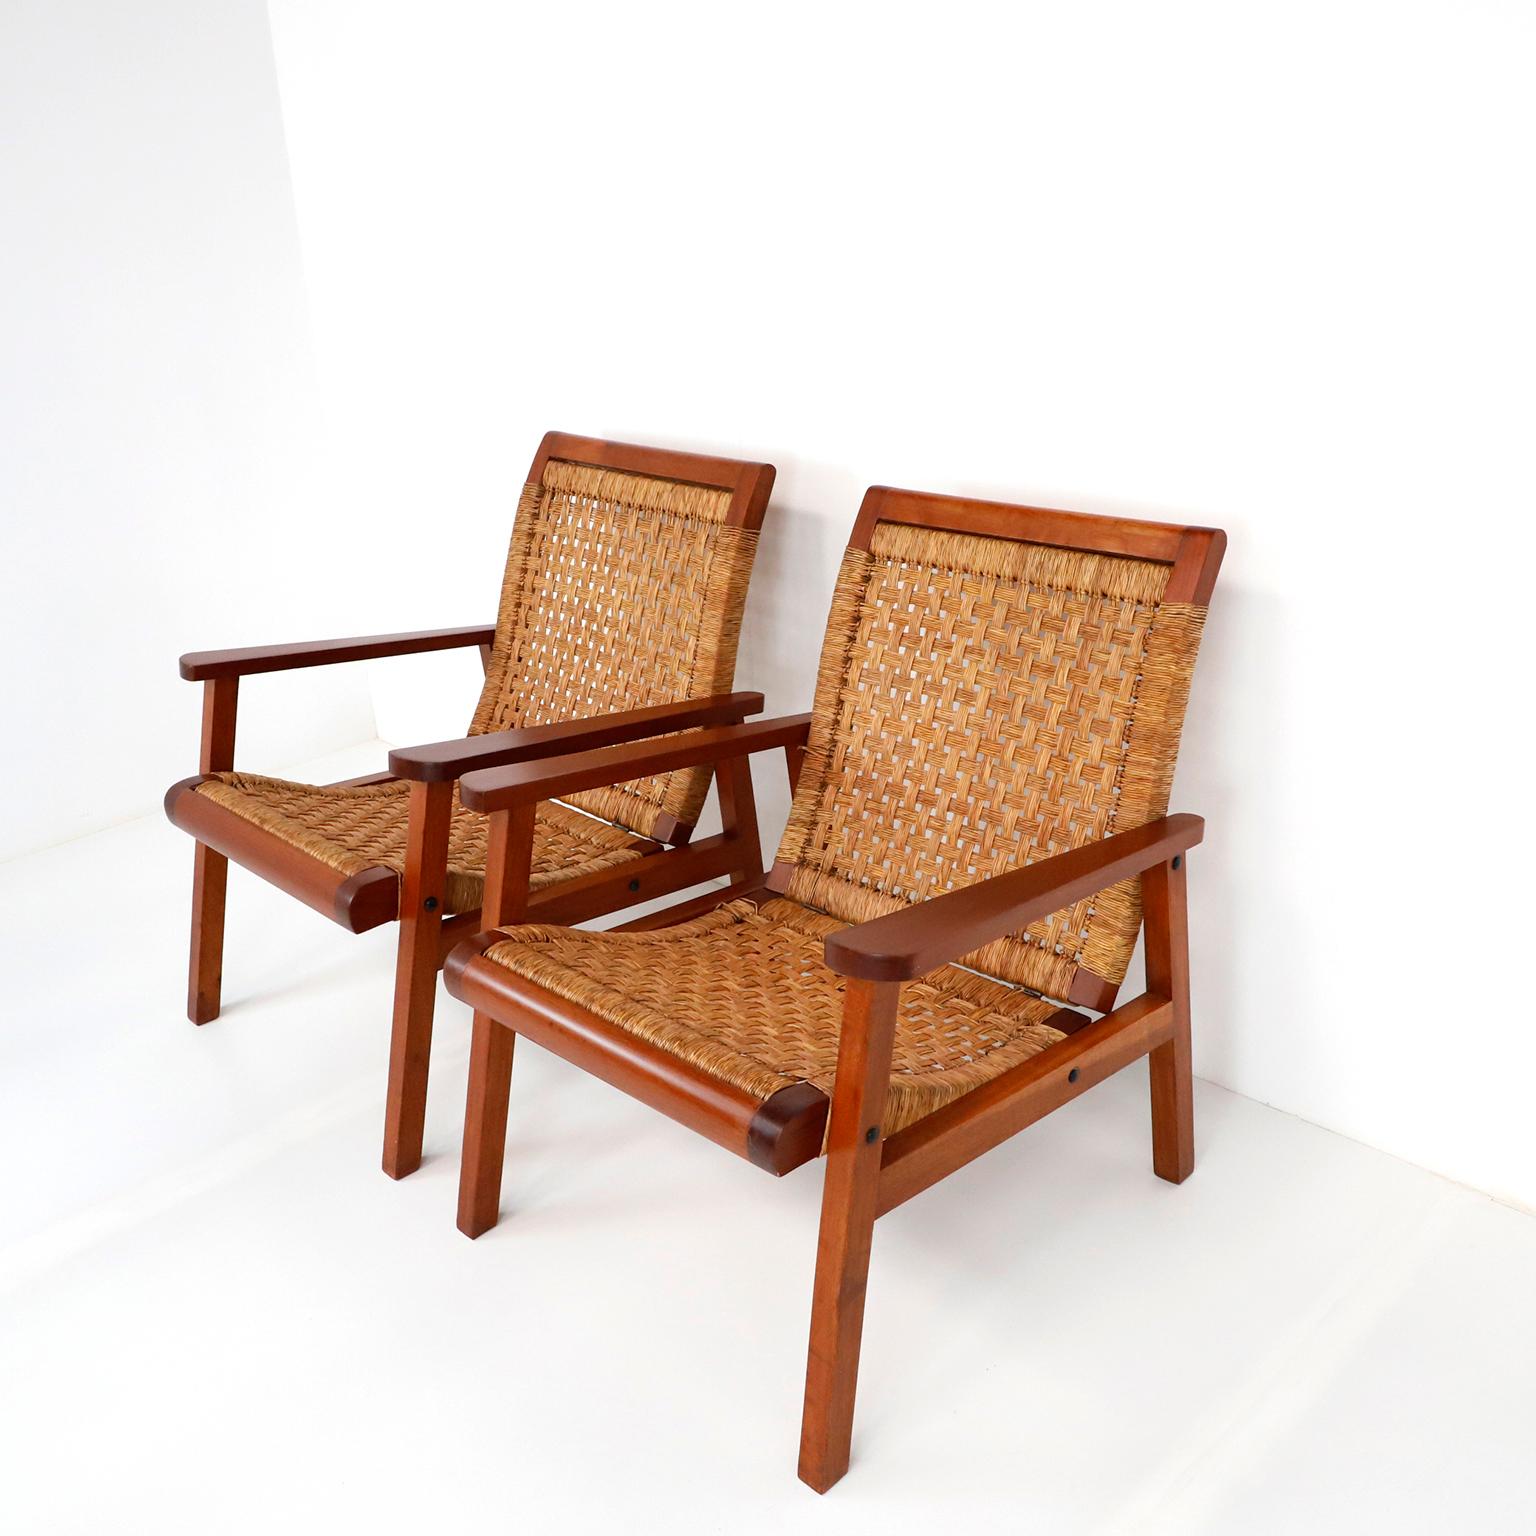 Ein Paar mexikanische, geflochtene Sessel aus der Mitte des Jahrhunderts, hergestellt in den 1950er Jahren von Muebles Tropicales und vertrieben von J. L. Legoretta, Mexiko-Stadt, Mexiko. Mit seinem schlichten, aber eleganten, modernen Gestell und